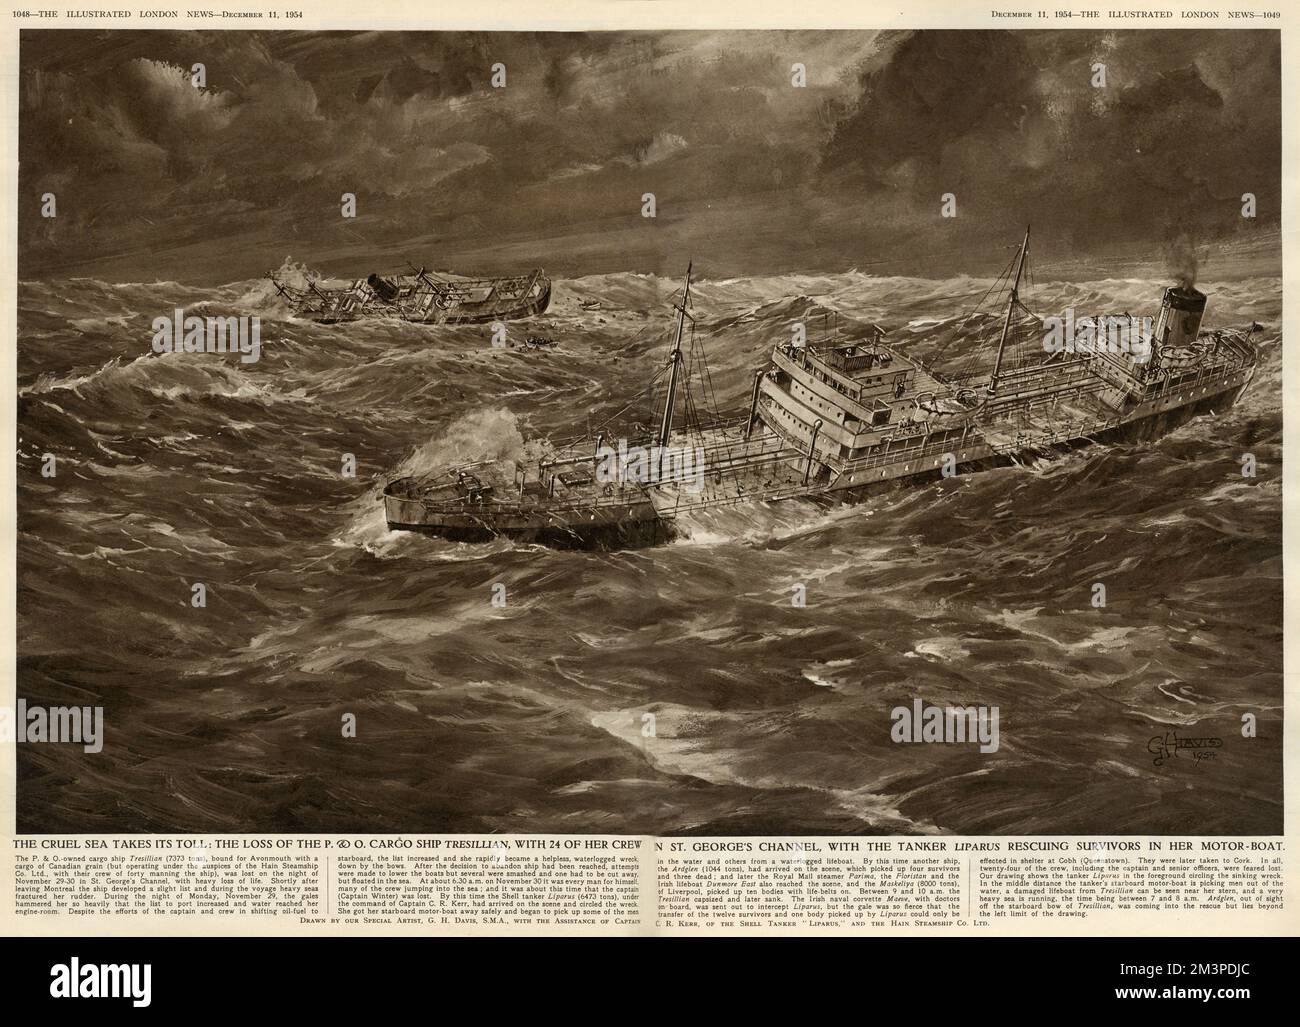 Nave da carico Tresillian della Hain Steamship Co.. (St Ives) perse la notte dal 29th al 30th novembre 1954 nel canale di St George, vicino all'Irlanda, con gravi perdite di vite umane. La petroliera Liparus salvò i sopravvissuti sulla sua barca a motore. Data: 1954 Foto Stock